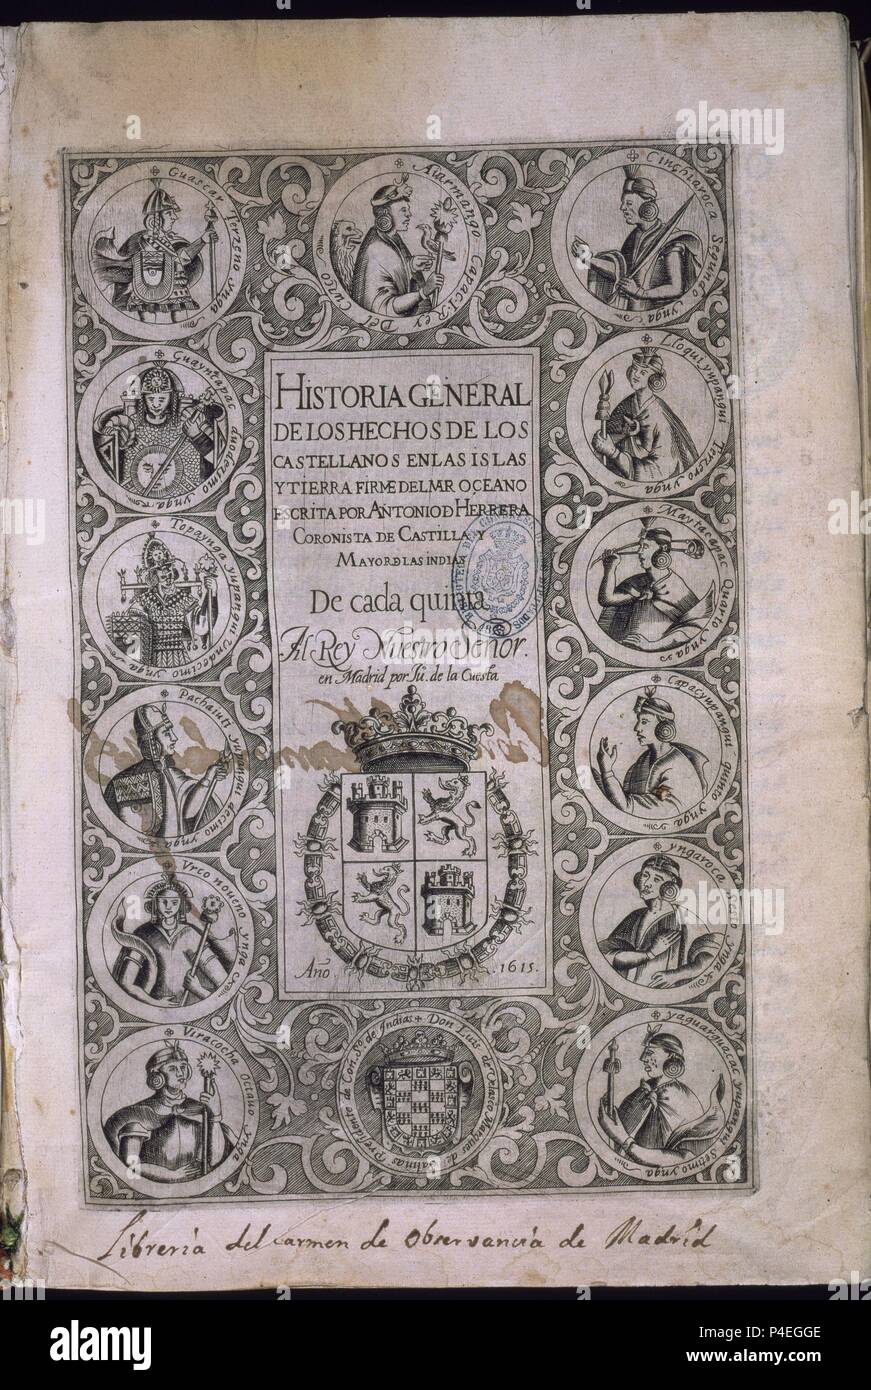 HISTORIA GENERAL DE LOS HECHOS CASTELLANOS EN LAS ISLAS Y TIERRA FIRME DE LAS INDIAS - DECADA V - MADRID 1615. Author: Antonio Herrera y Tordesillas (1549-1625). Location: CONGRESO DE LOS DIPUTADOS-BIBLIOTECA, MADRID. Stock Photo